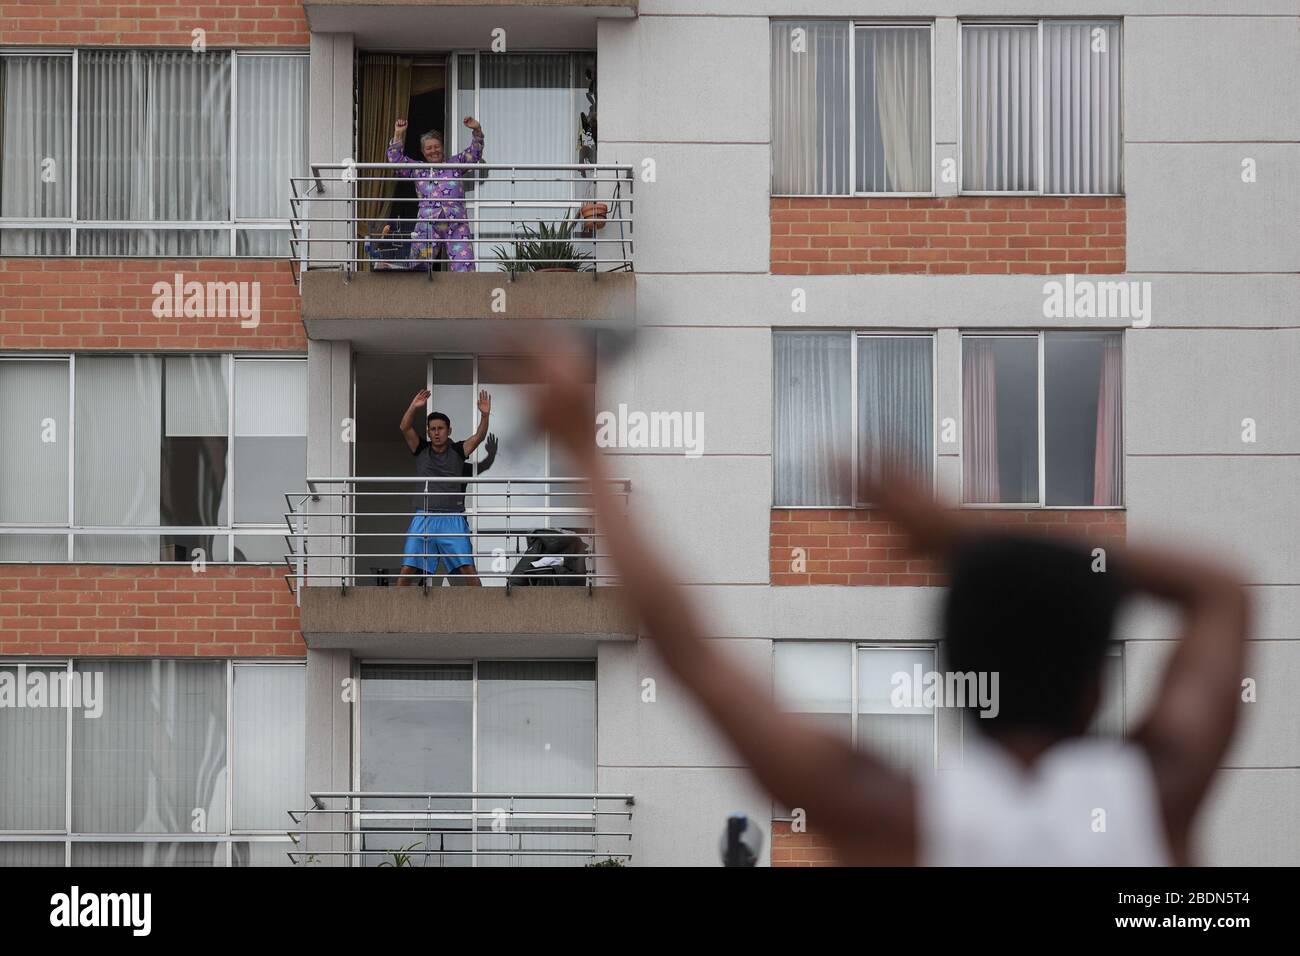 Beijing, Colombie. 7 avril 2020. Les résidents font de l'exercice physique sur les balcons de Bogota, Colombie, le 7 avril 2020. La Colombie a signalé mardi que le nombre de cas confirmés de COVID-19 avait augmenté à 1 780. Crédit: Jhon Paz/Xinhua/Alay Live News Banque D'Images